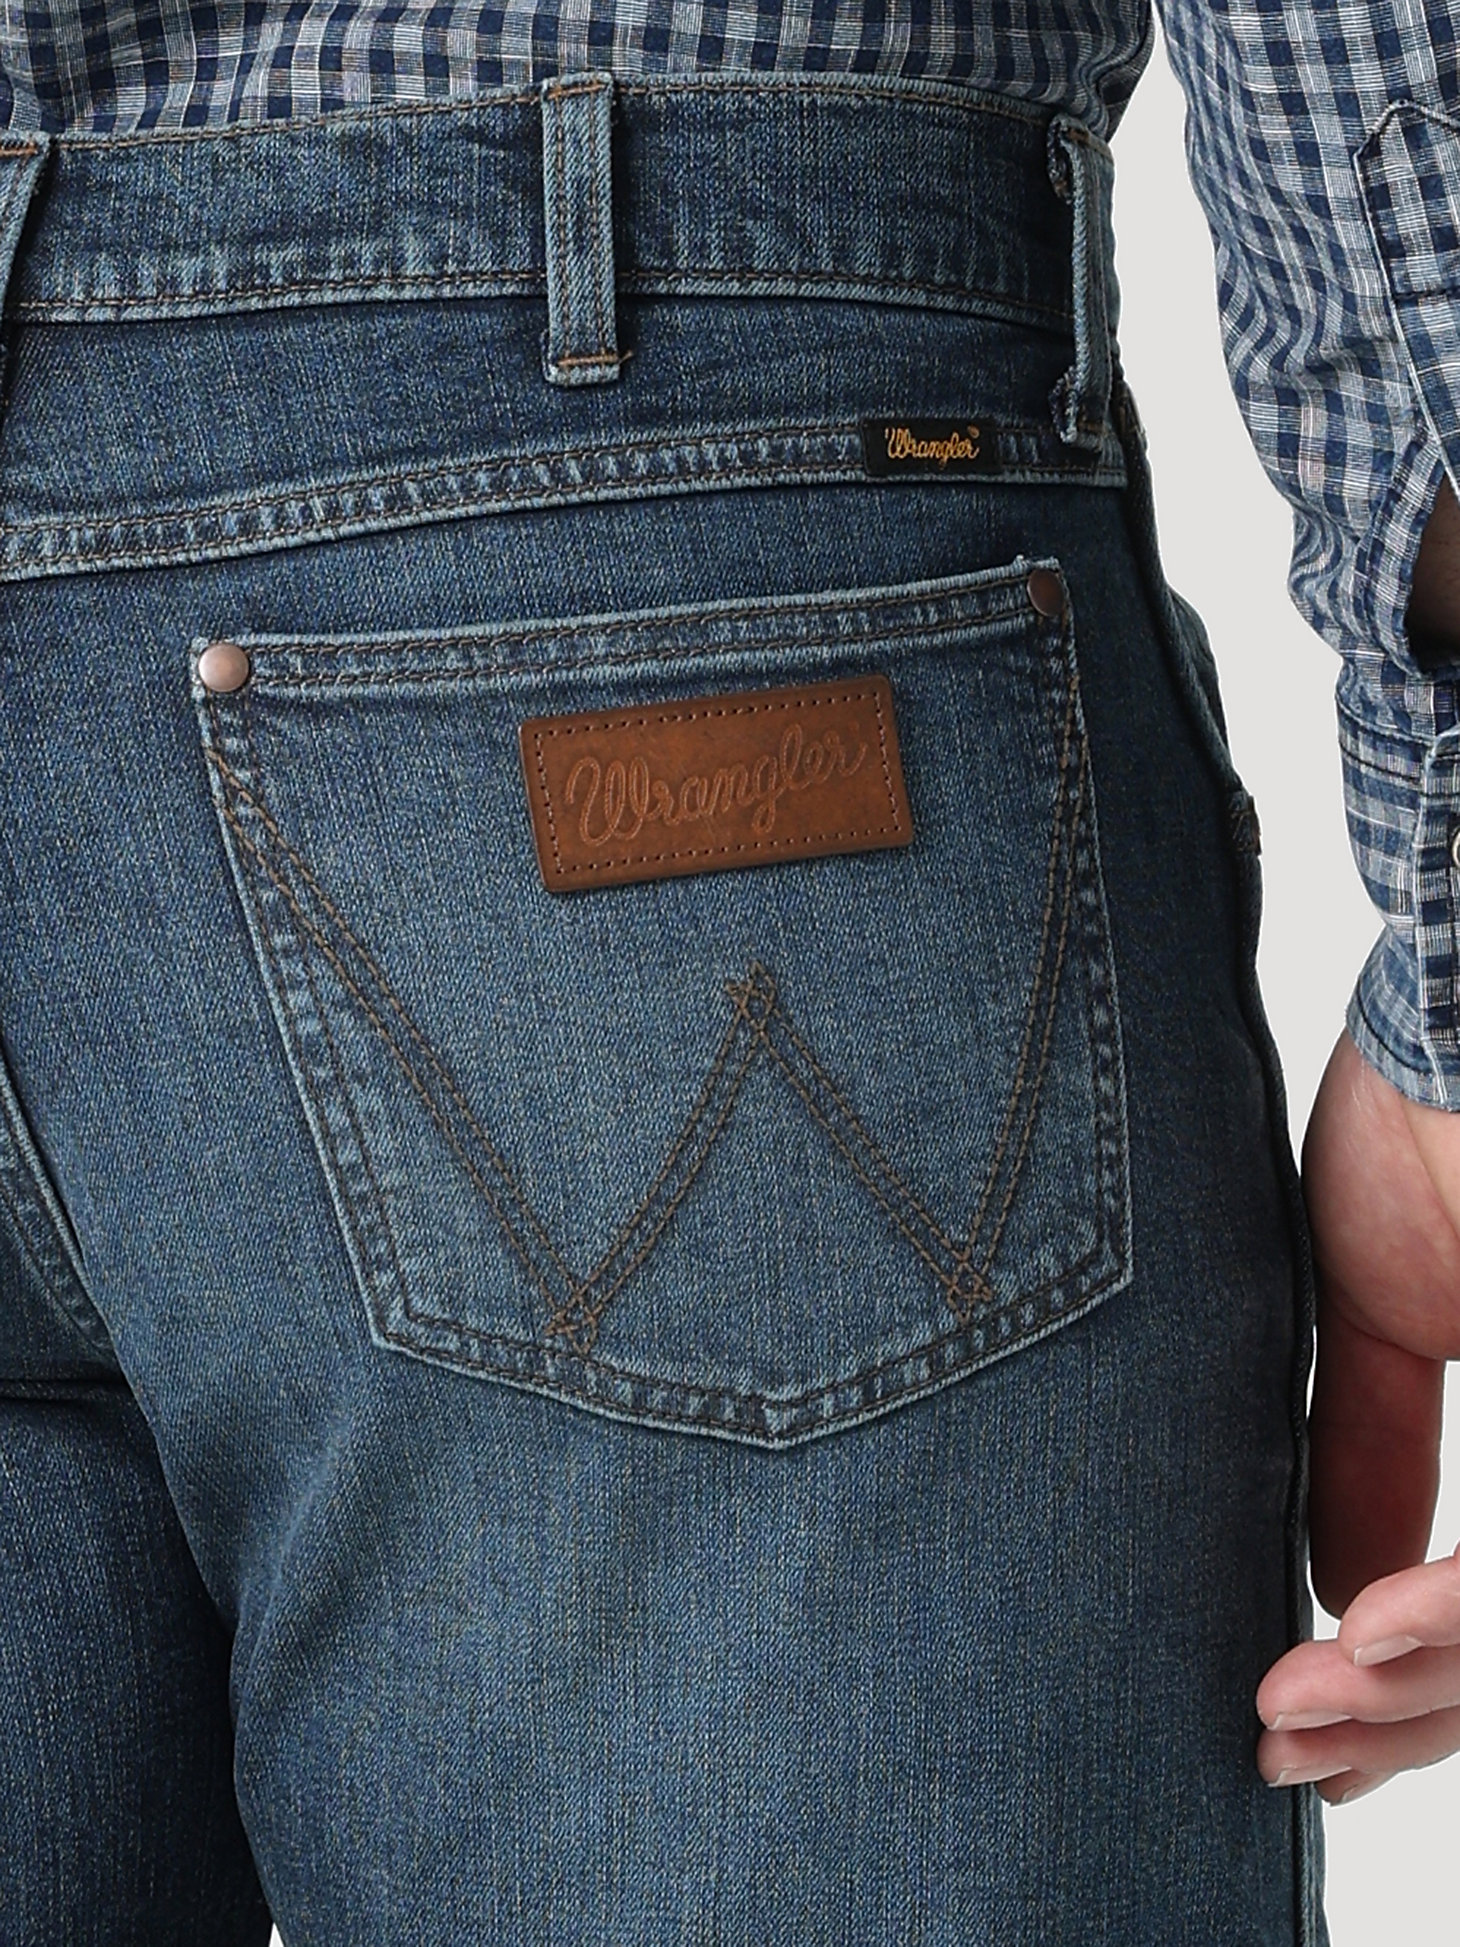 The Wrangler Retro® Premium Jean: Men's Slim Straight in Enerjean alternative view 4